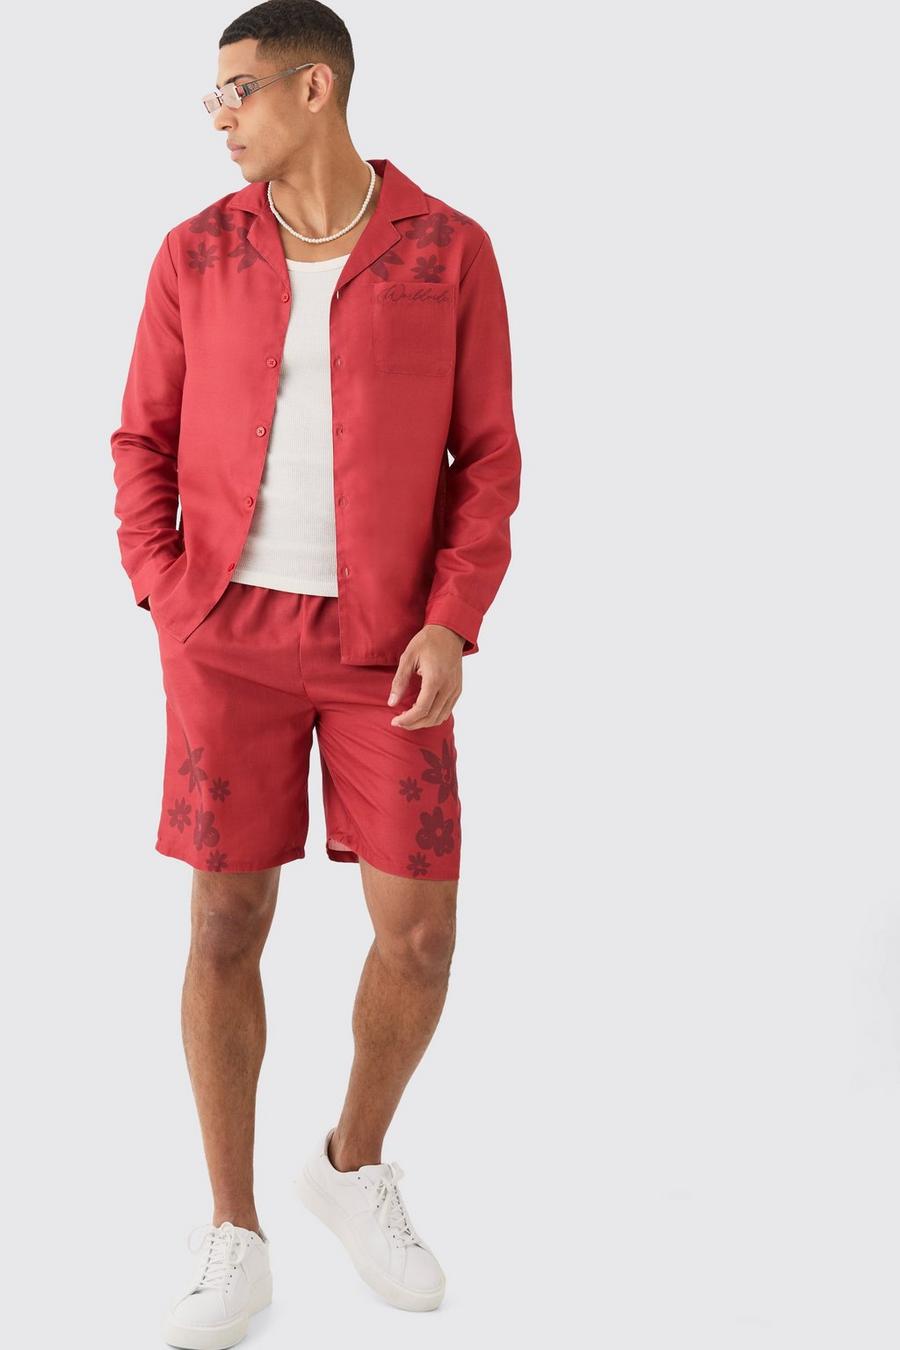 Florales Hemd & Shorts im Leinen-Look, Red